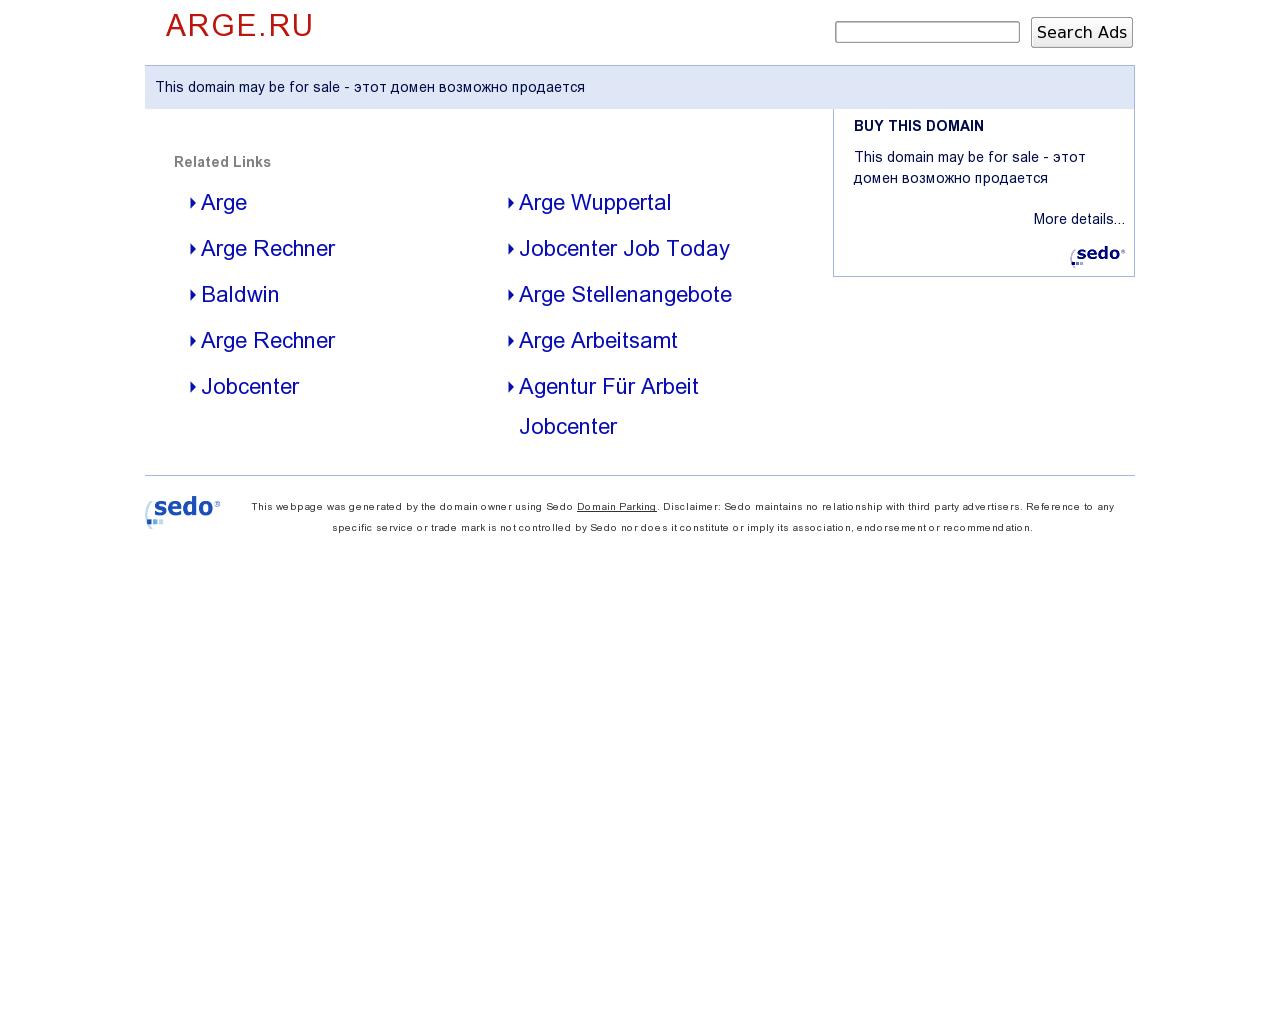 Изображение сайта arge.ru в разрешении 1280x1024